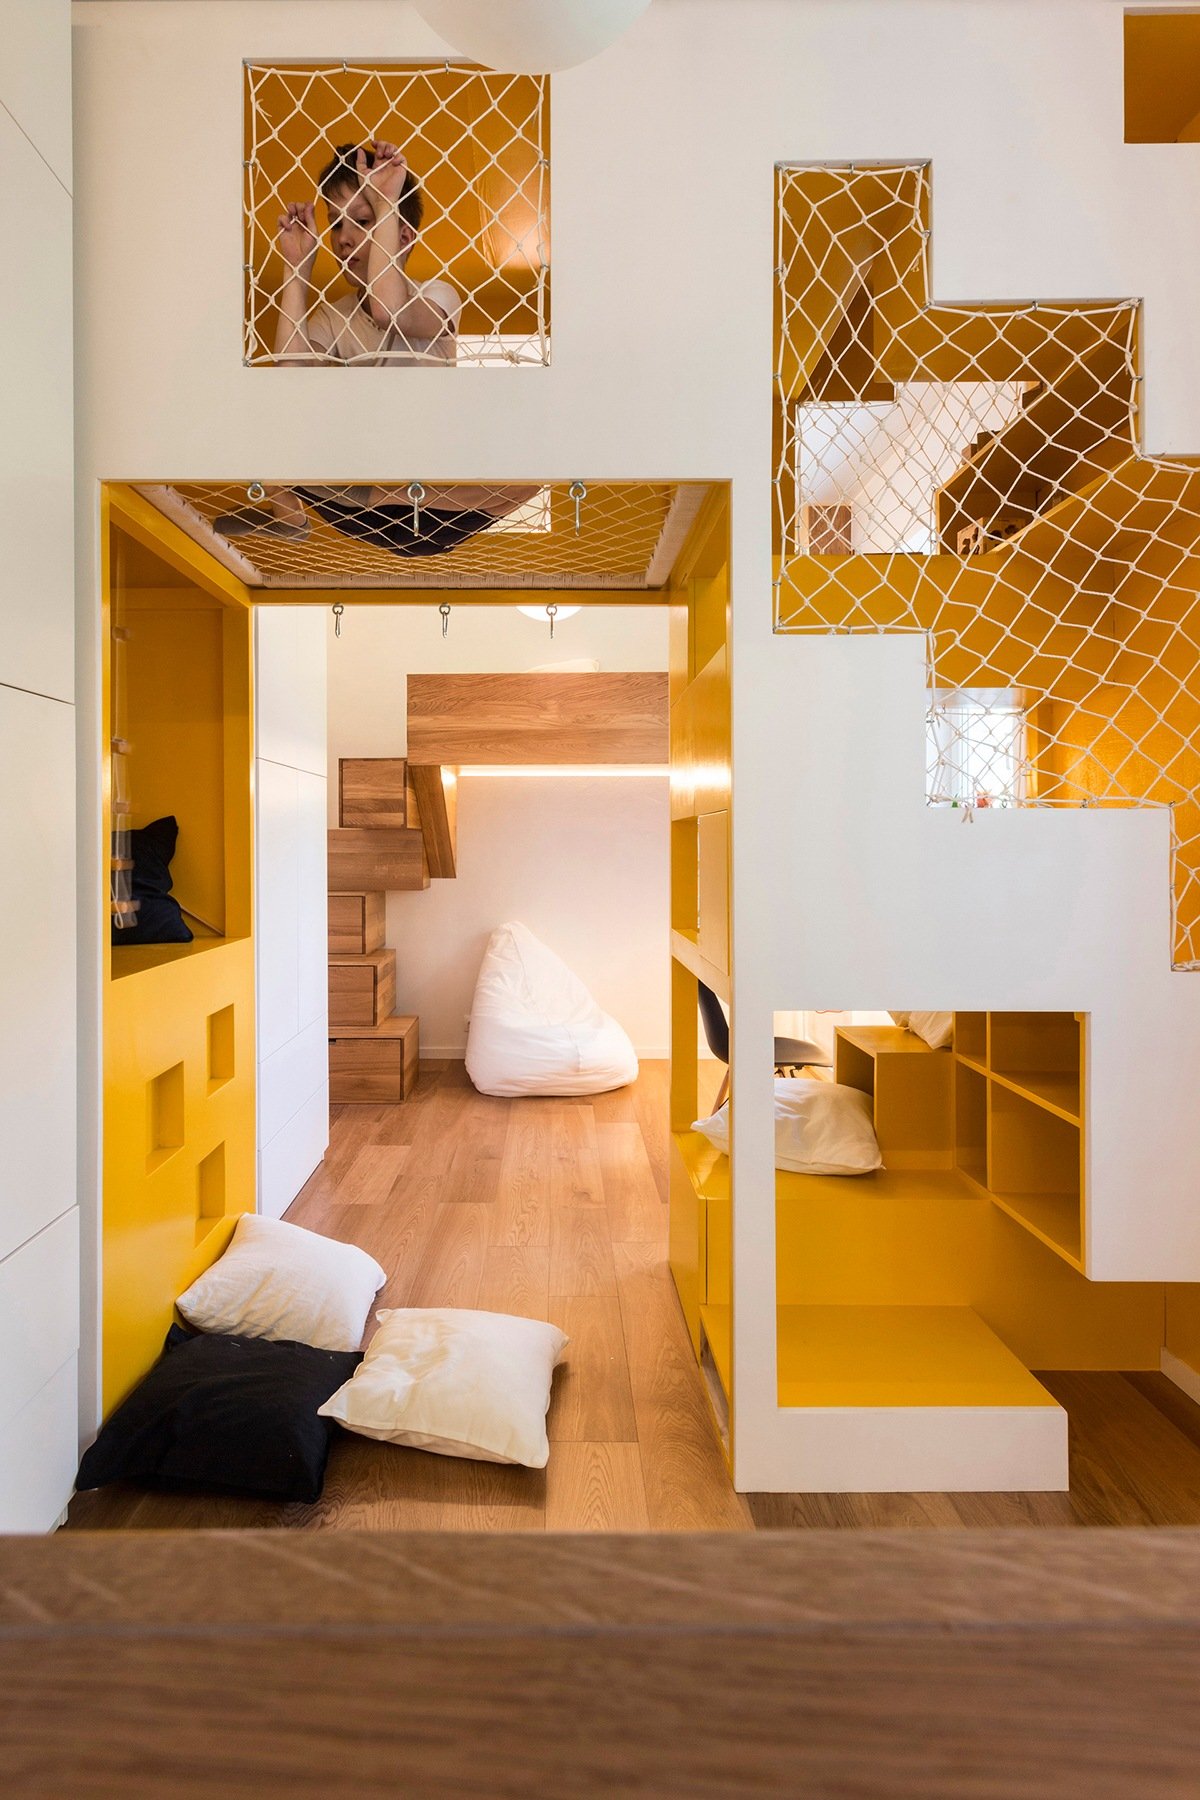 thiết kế nội thất độc đáo, thông minh và đa năng cho không gian nhà nhỏ